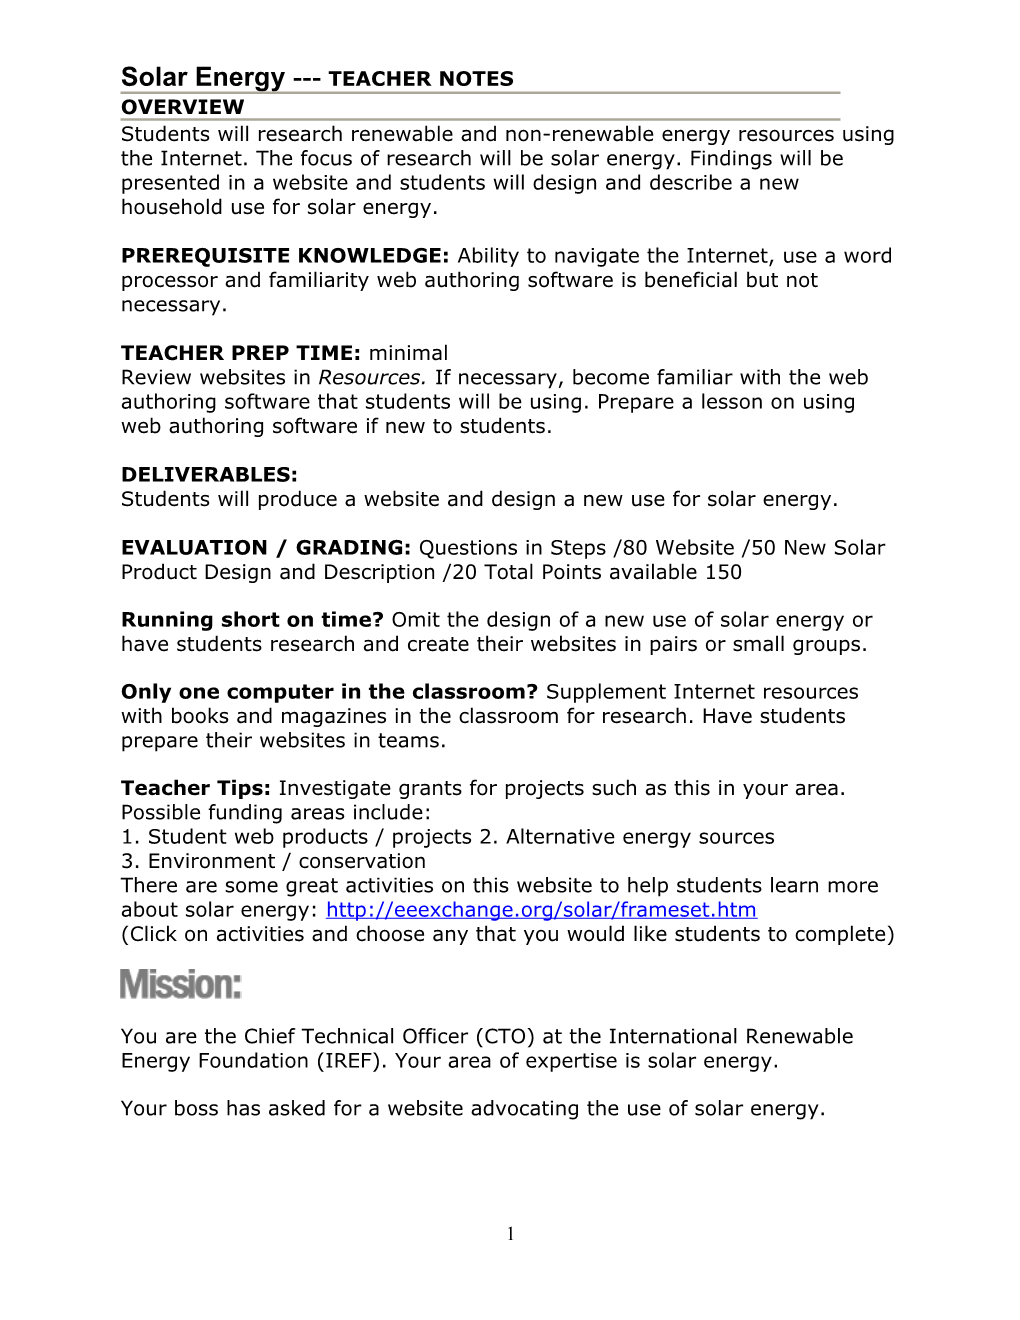 Solar Energy TEACHER NOTES